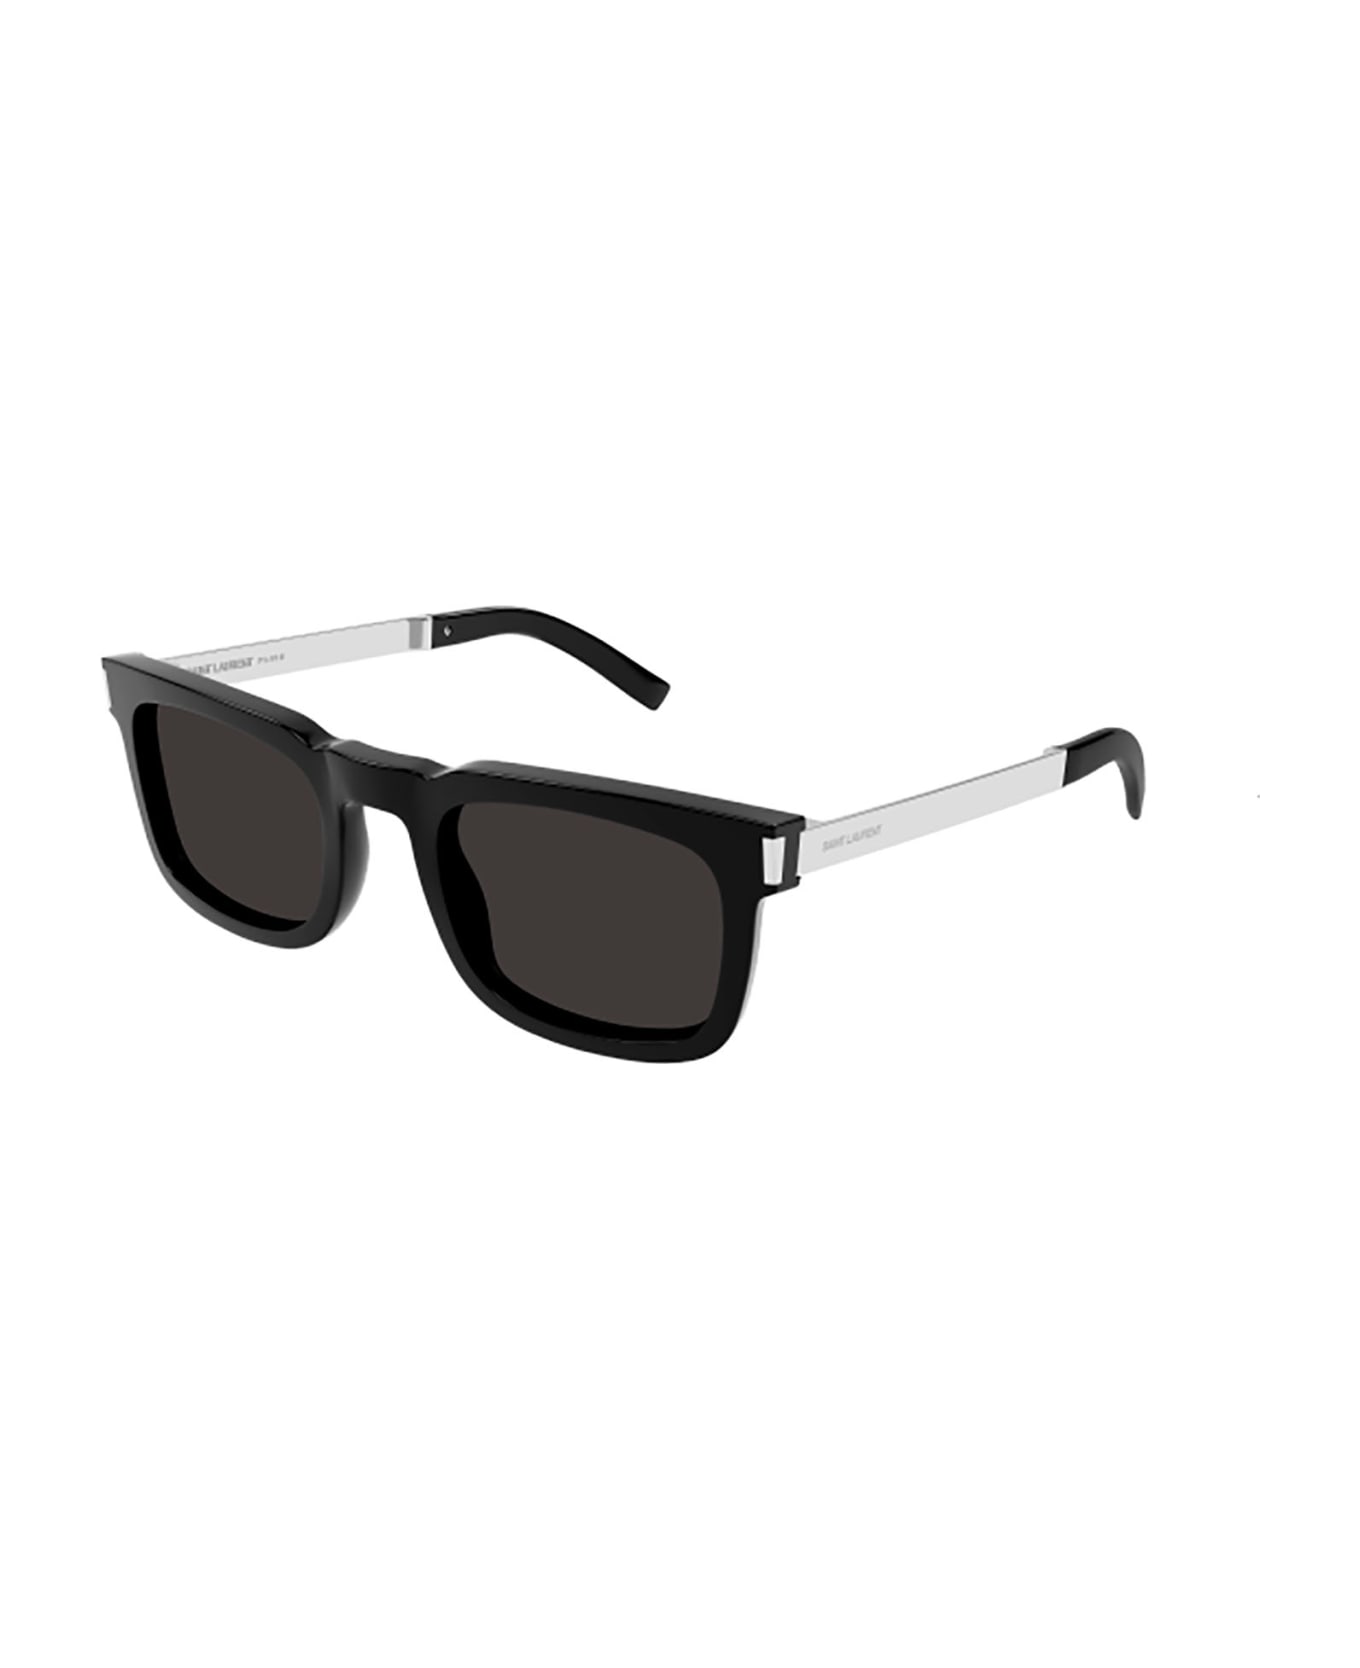 Saint Laurent Eyewear SL 581 Sunglasses - Sunglasses SL 68 003